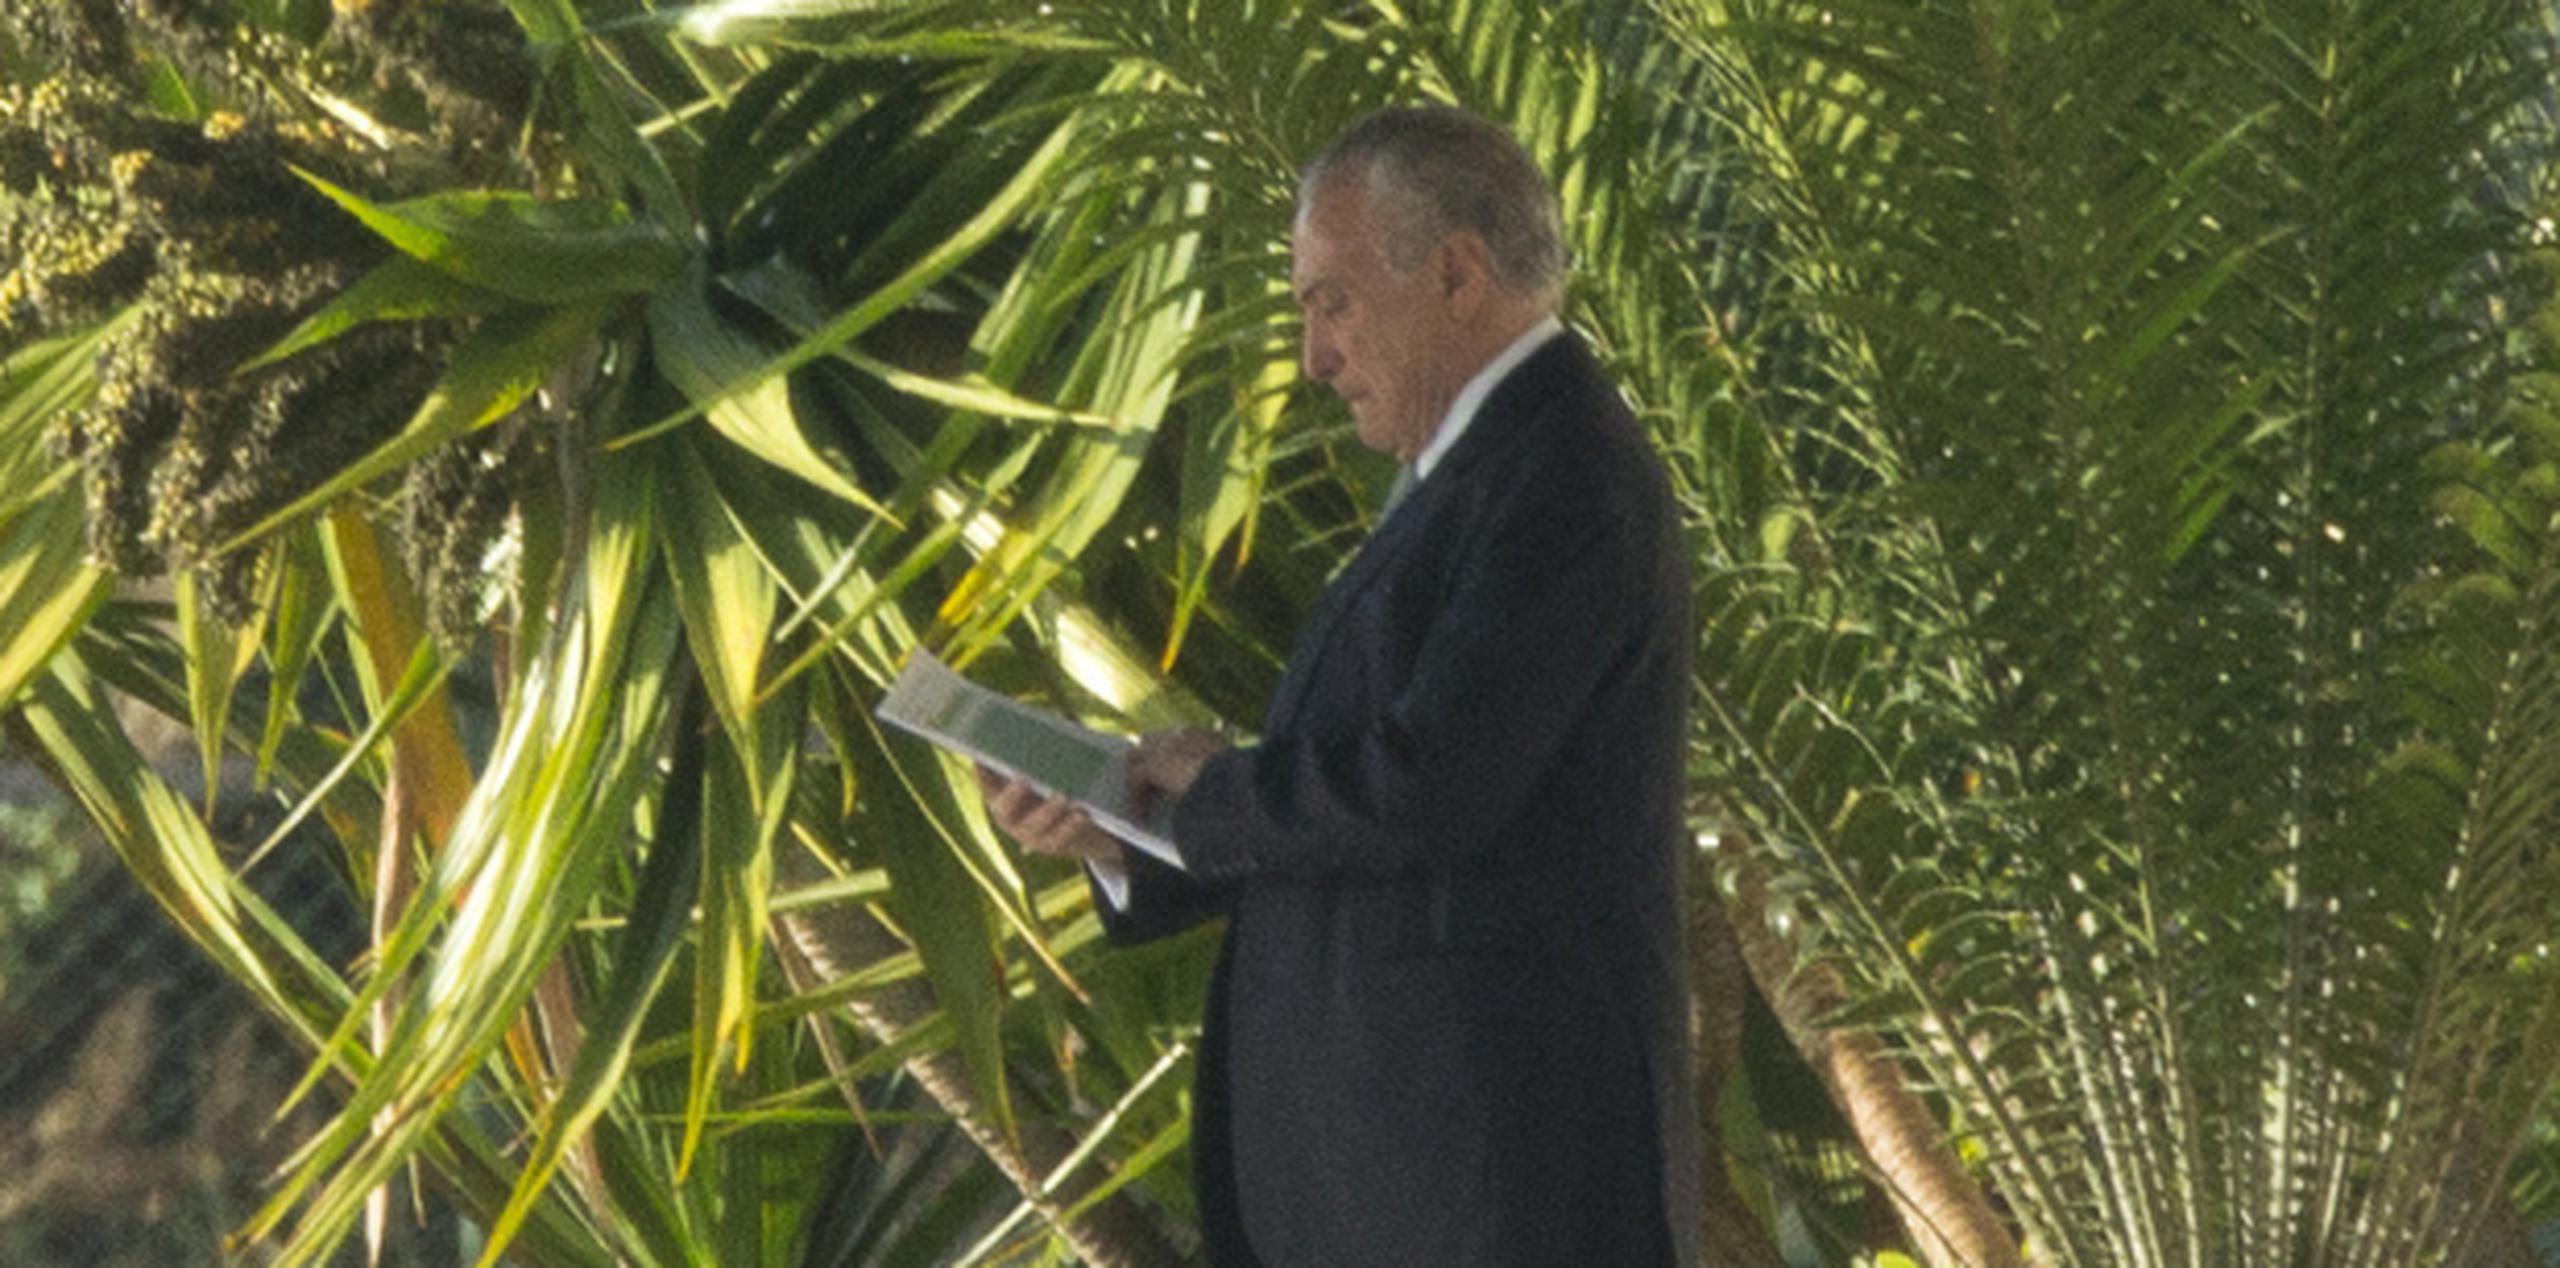 El presidente de Brasil, Michel Temer, es uno de los principales implicados. (Archivo)